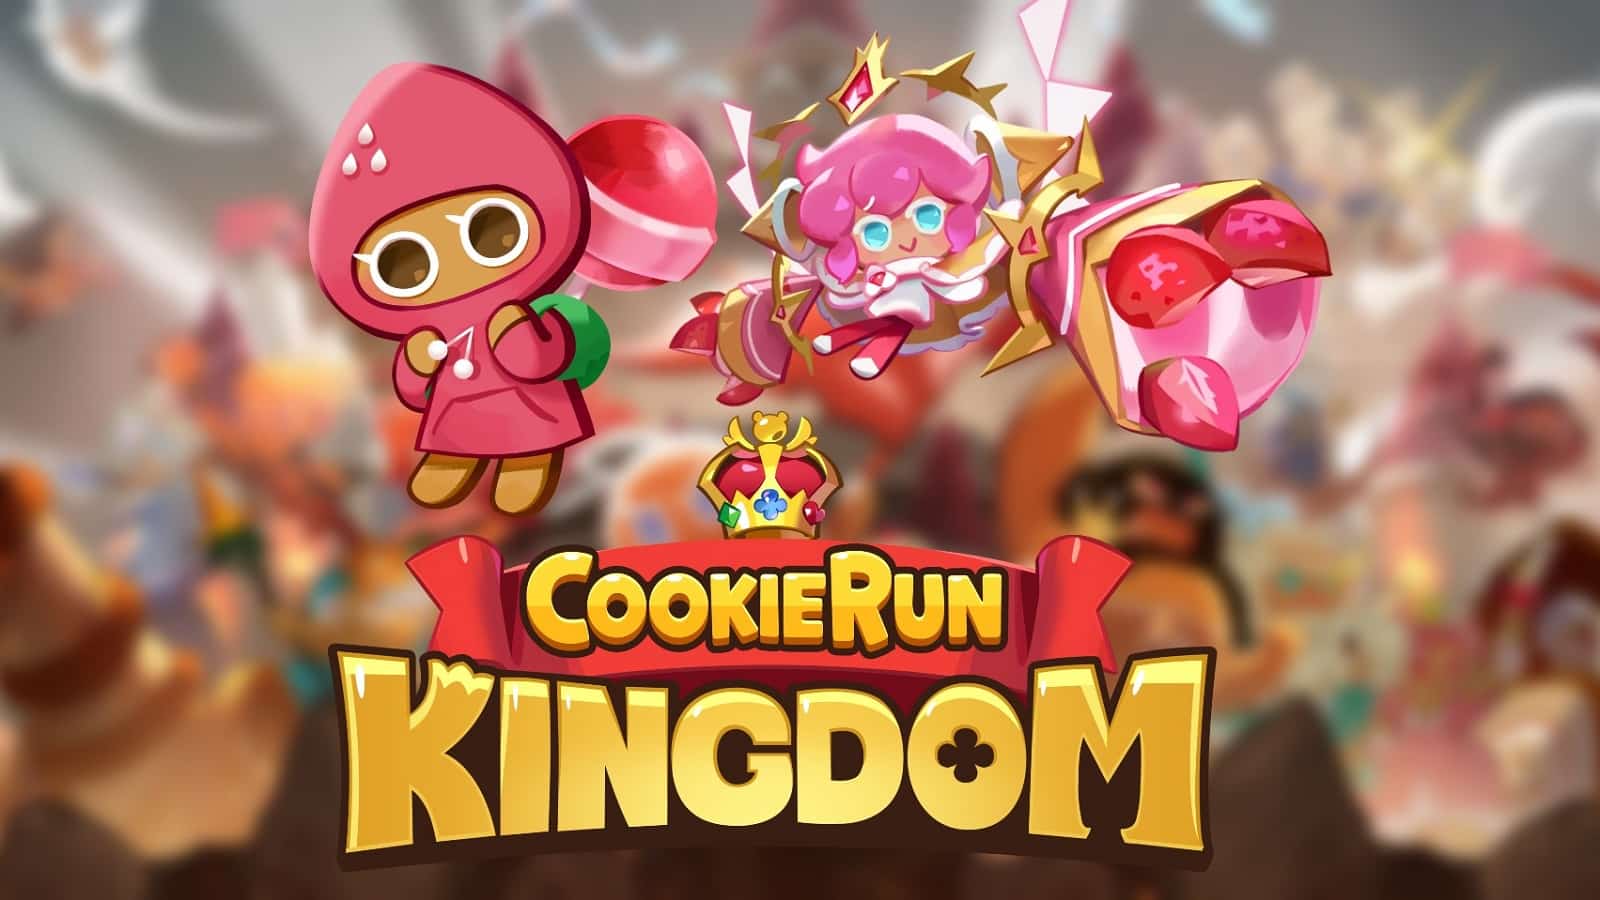 Cookie Run Kingdom Biscotti alla fragola